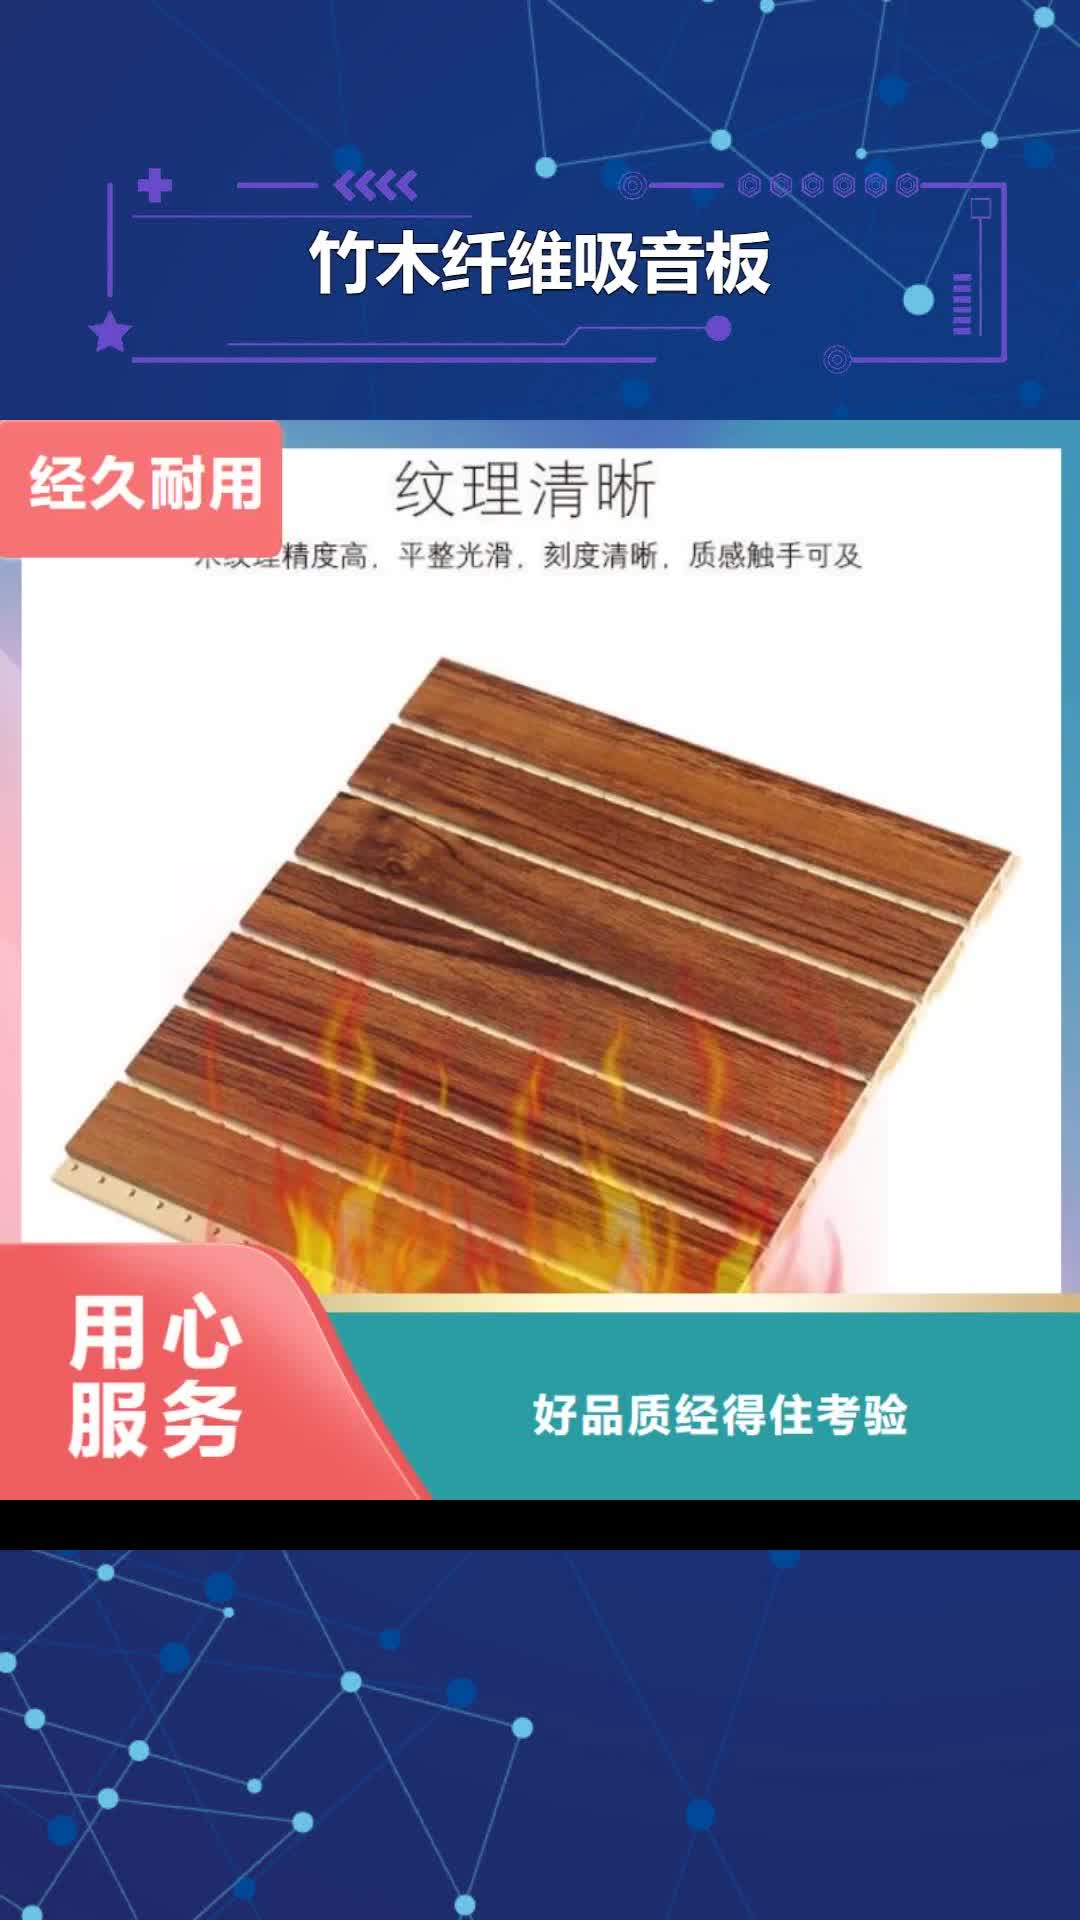 蚌埠【竹木纤维吸音板】石塑集成墙板研发生产销售